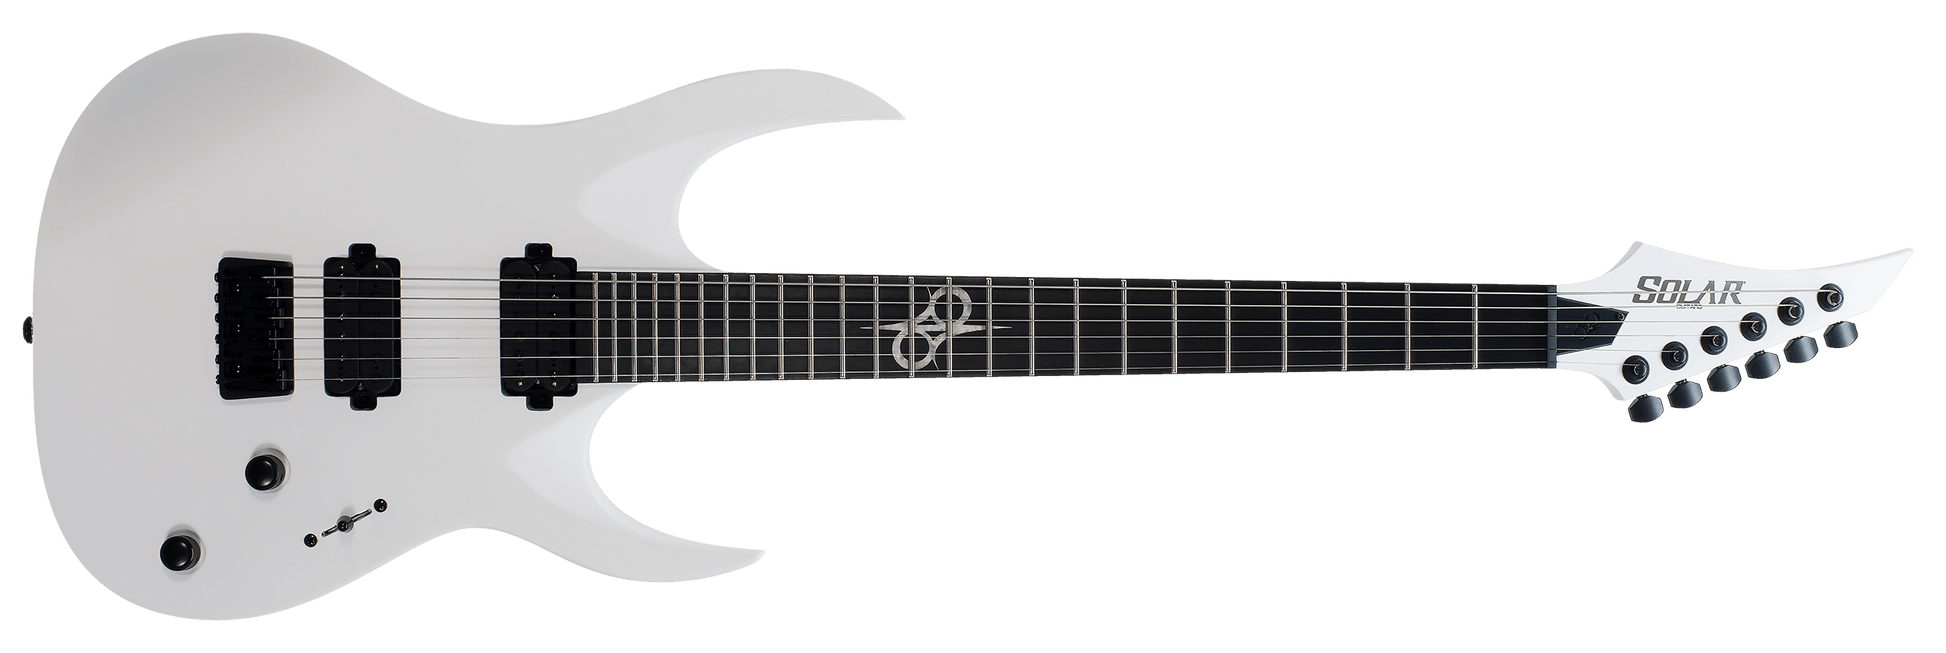 Solar Guitars A2.6 Electric Guitar with Hard Case - GuitarPusher